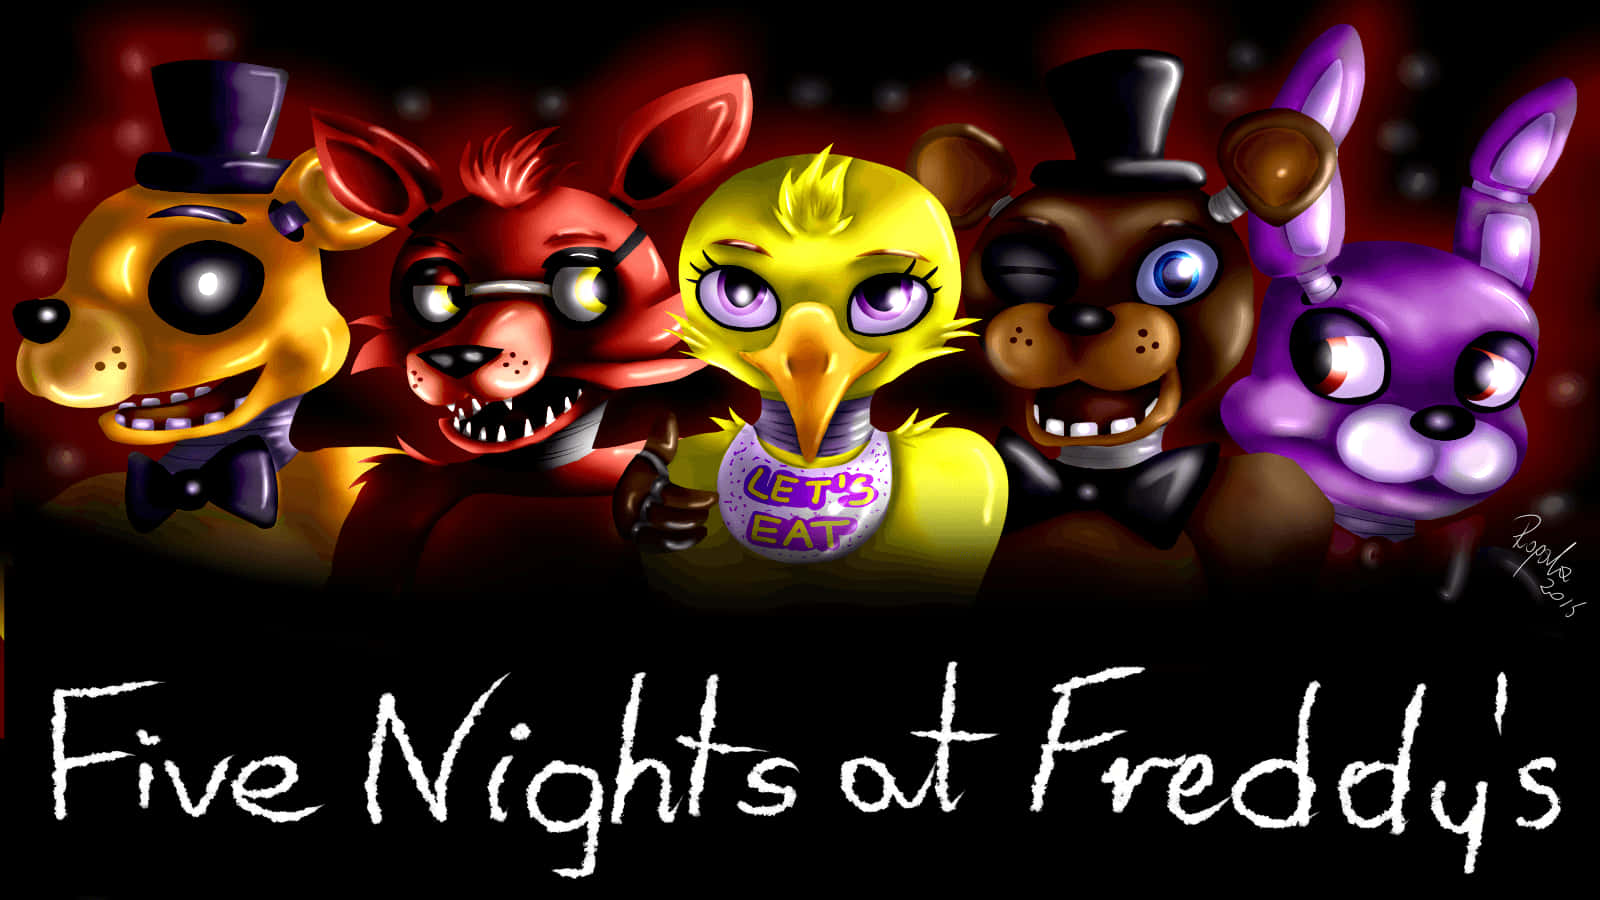 Fivenights At Freddy's Von Sassy Wallpaper